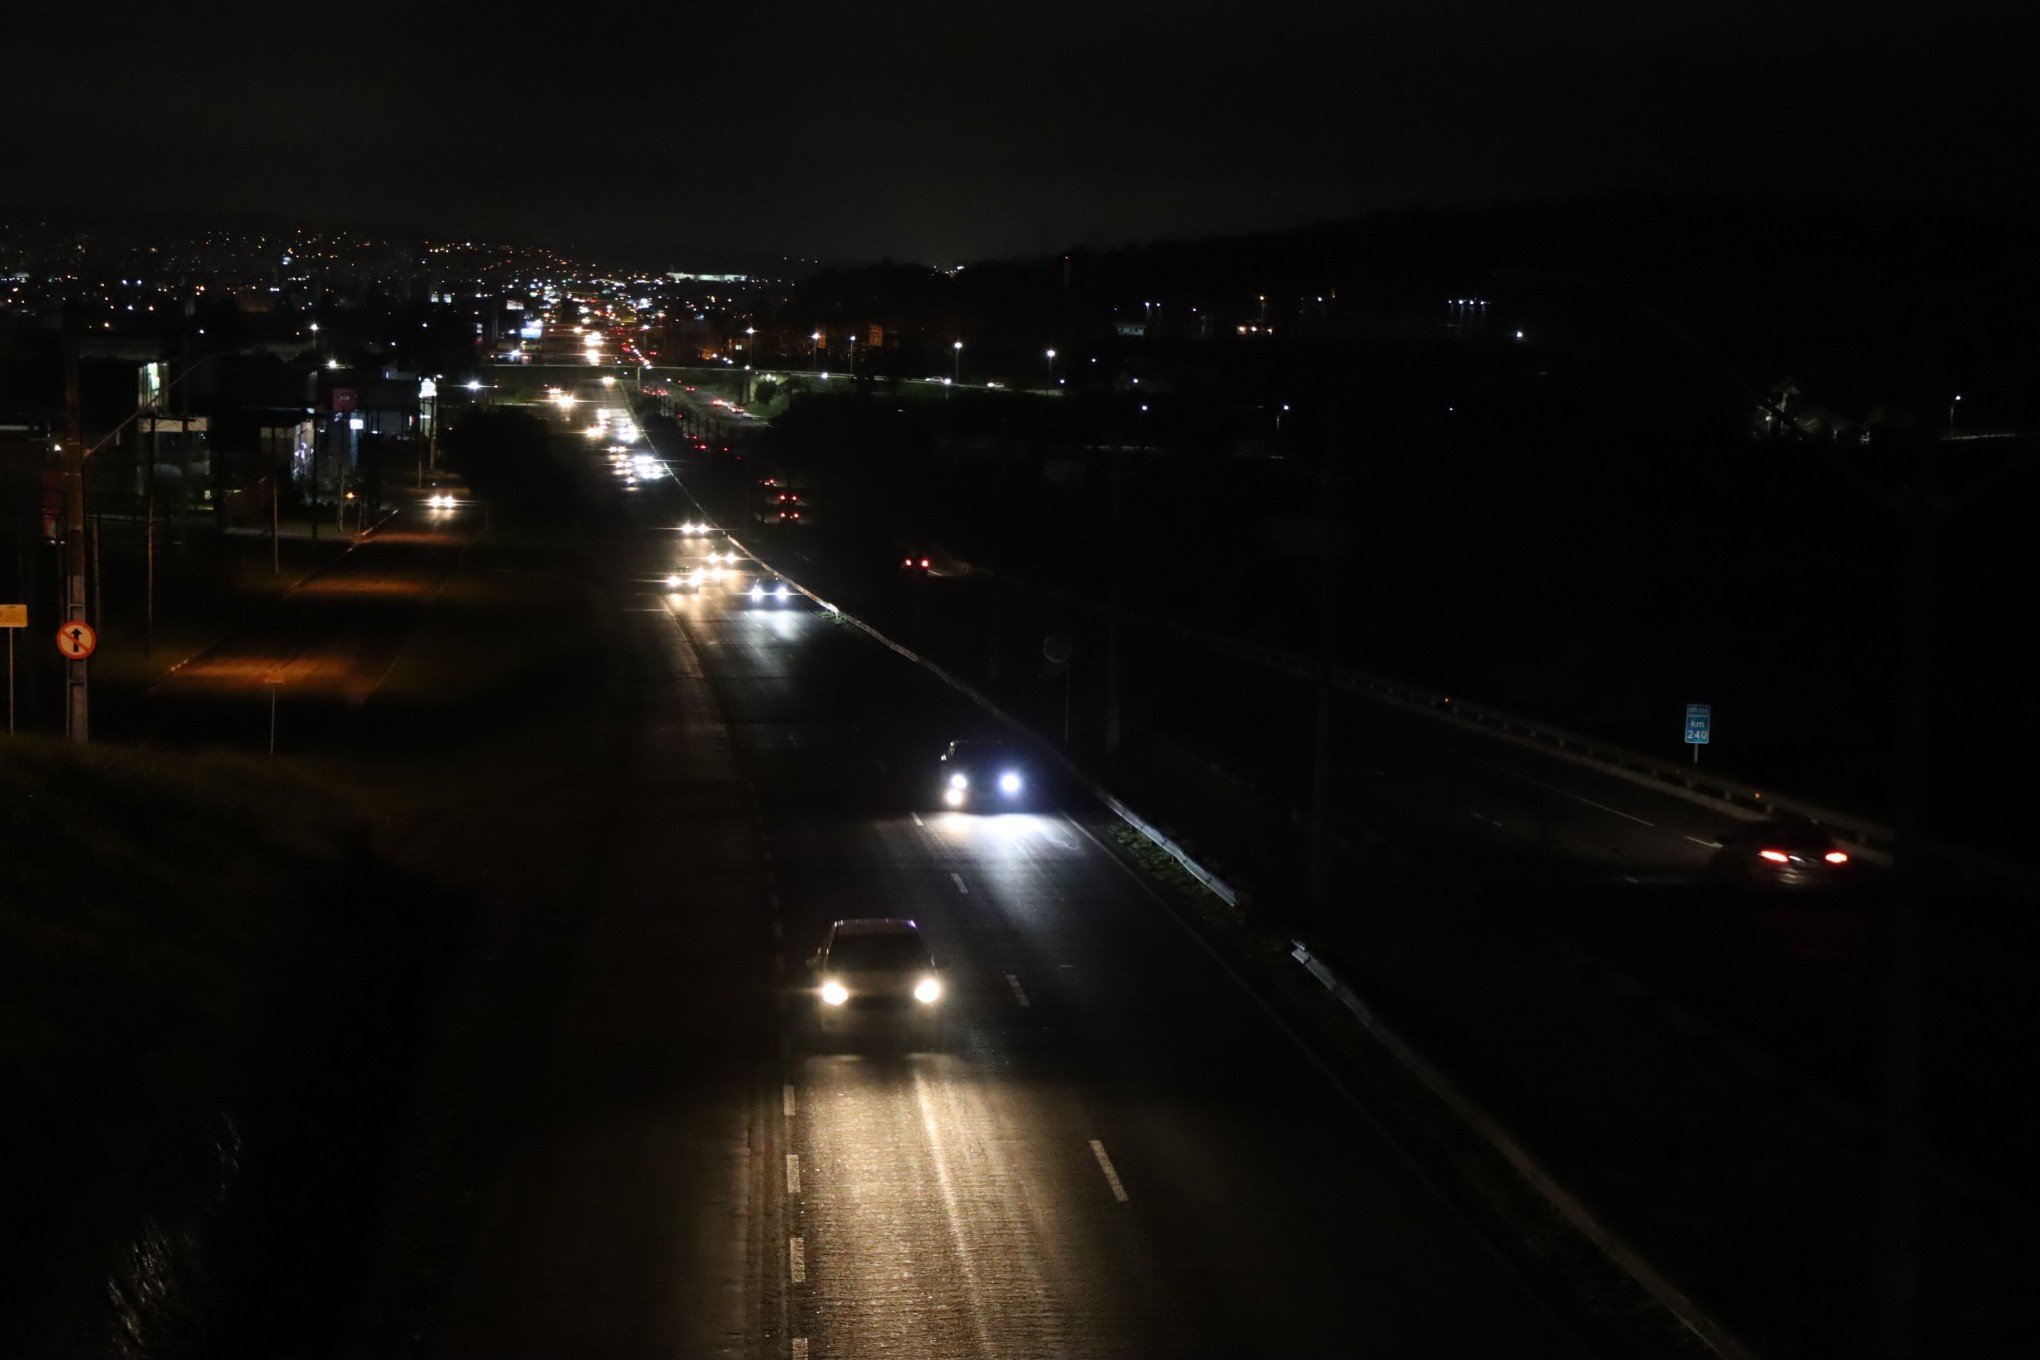 BR-116: Motoristas lidam com escuridão em trecho de Novo Hamburgo